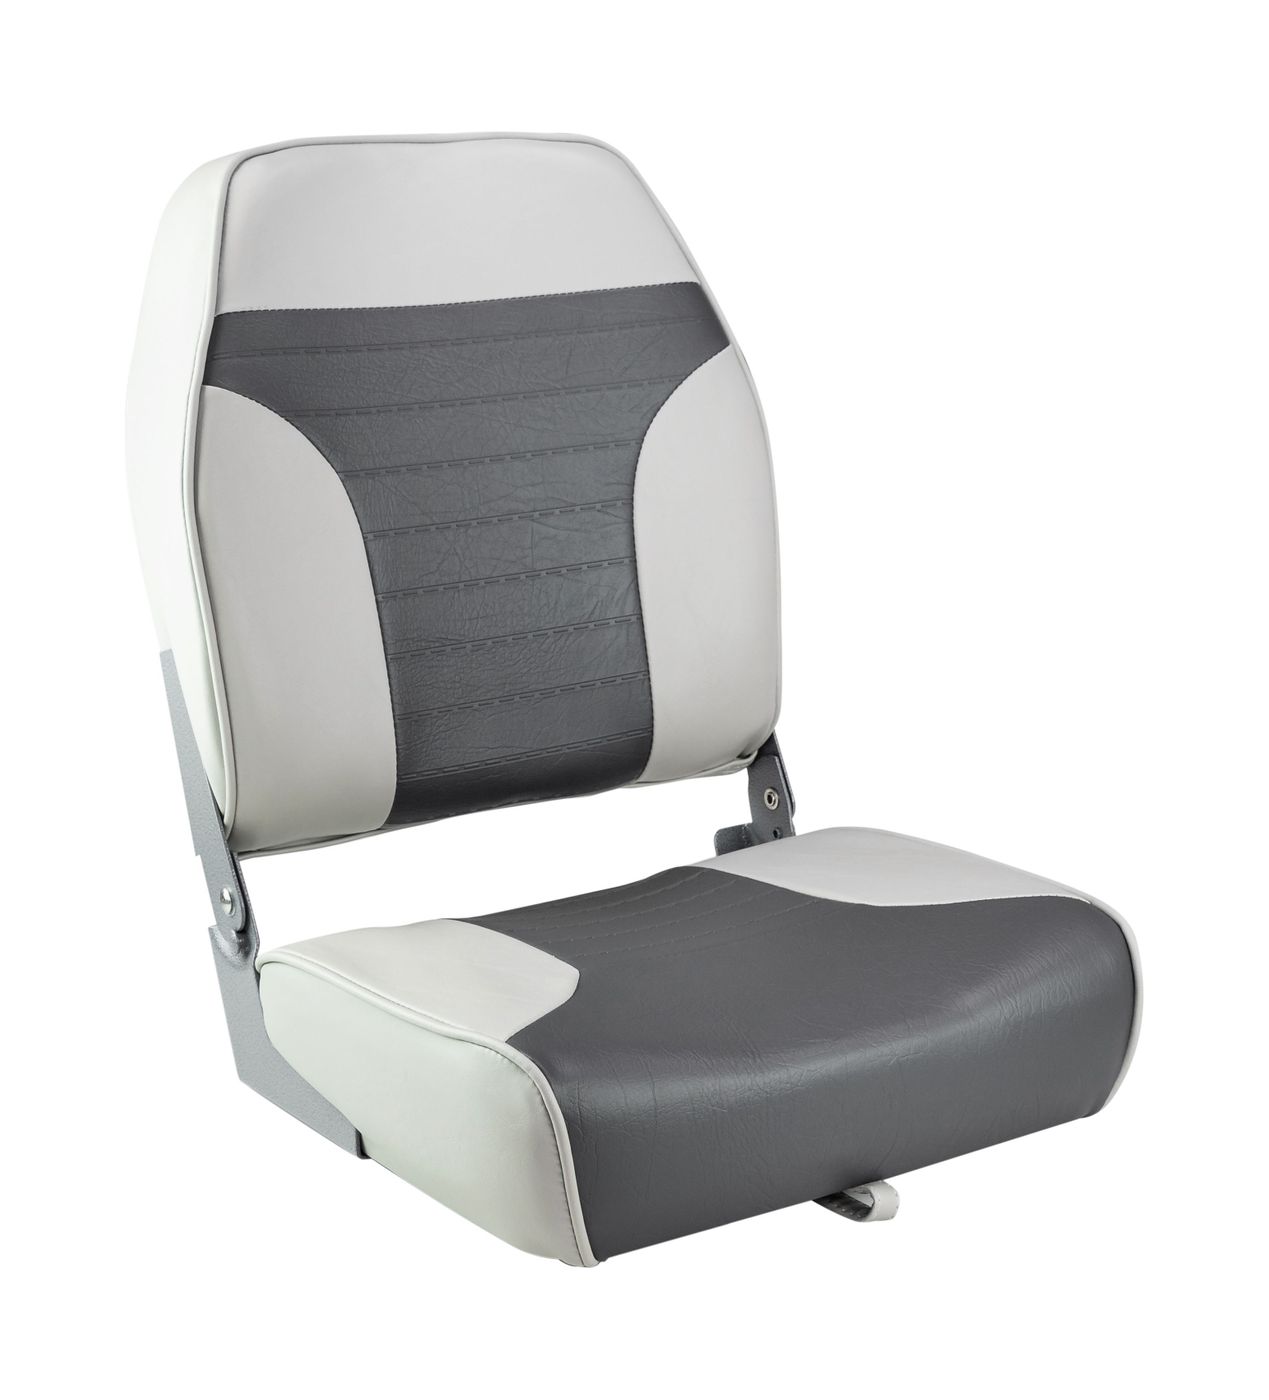 Кресло складное мягкое ECONOMY с высокой спинкой, цвет серый/темно-серый 1040663 кресло складное мягкое economy с высокой спинкой белое 1040649